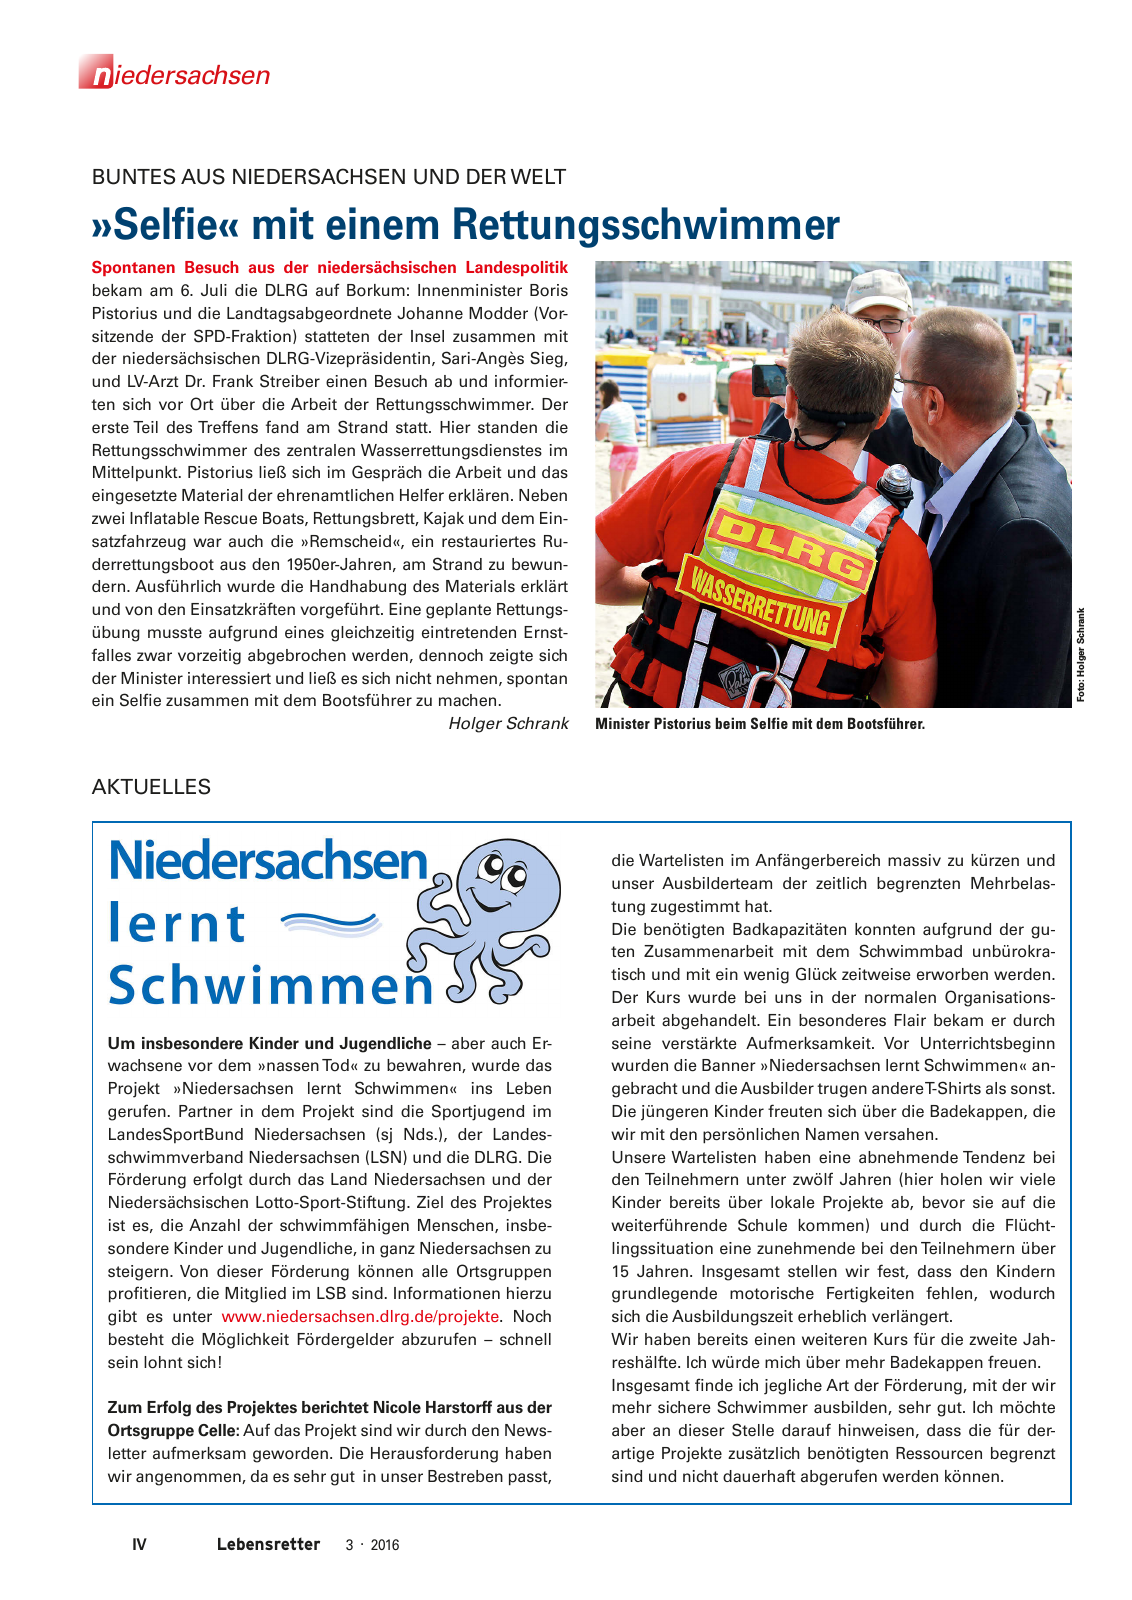 Vorschau Lebensretter 3/2016 - Regionalausgabe Niedersachsen Seite 6